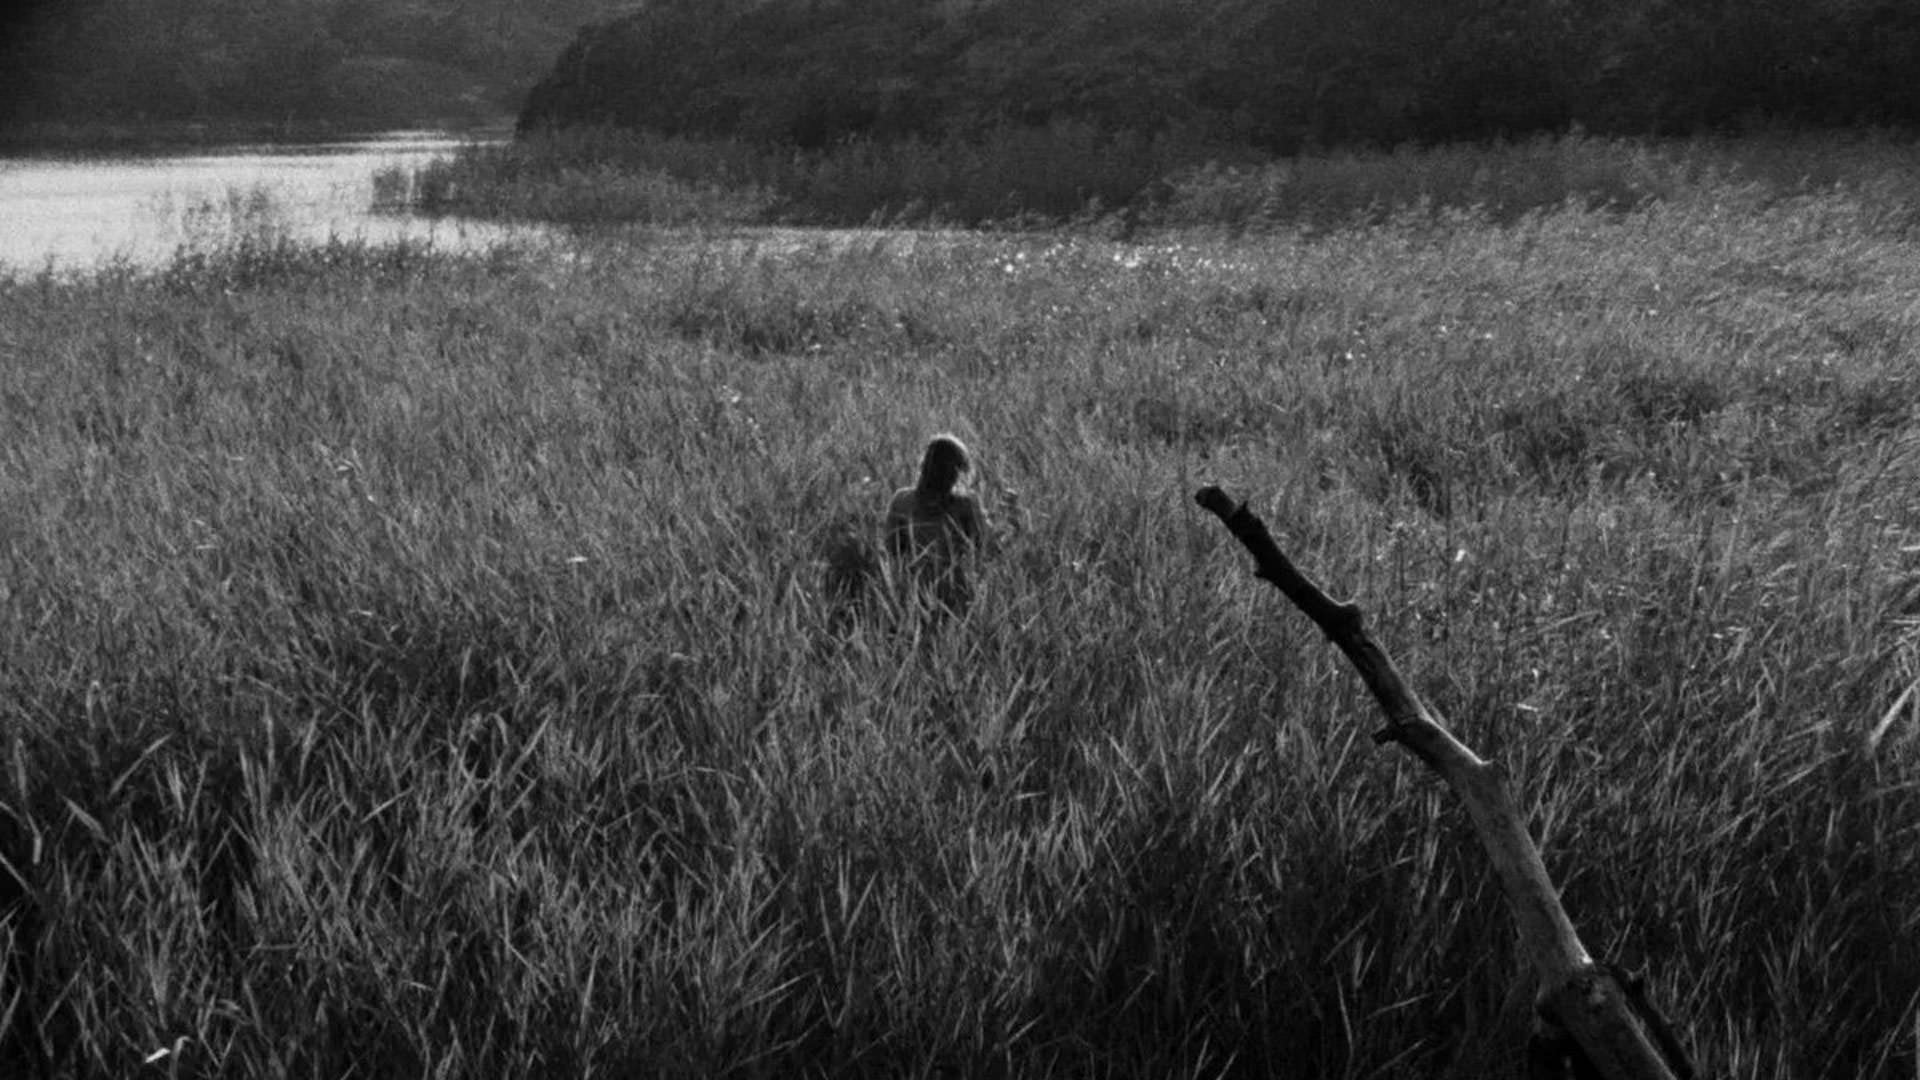 دختری در یک علفزار نزدیک آب ایستاده است در نمایی از فیلم تابستان با مونیکا به کارگردانی اینگمار برگمان